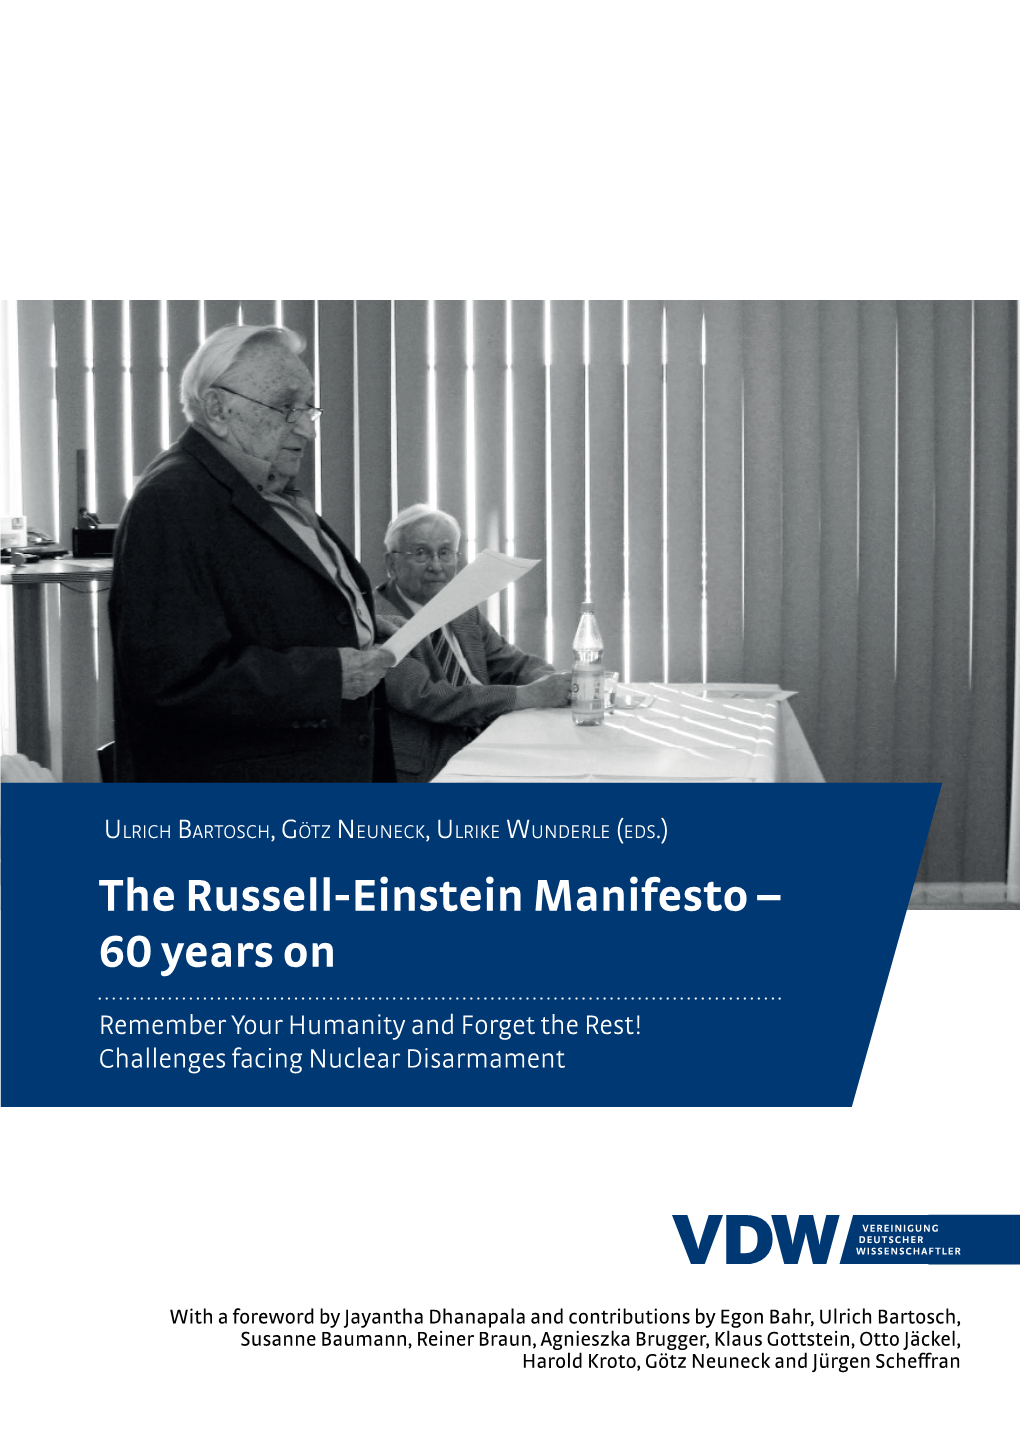 The Russell-Einstein Manifesto – 60 Years On